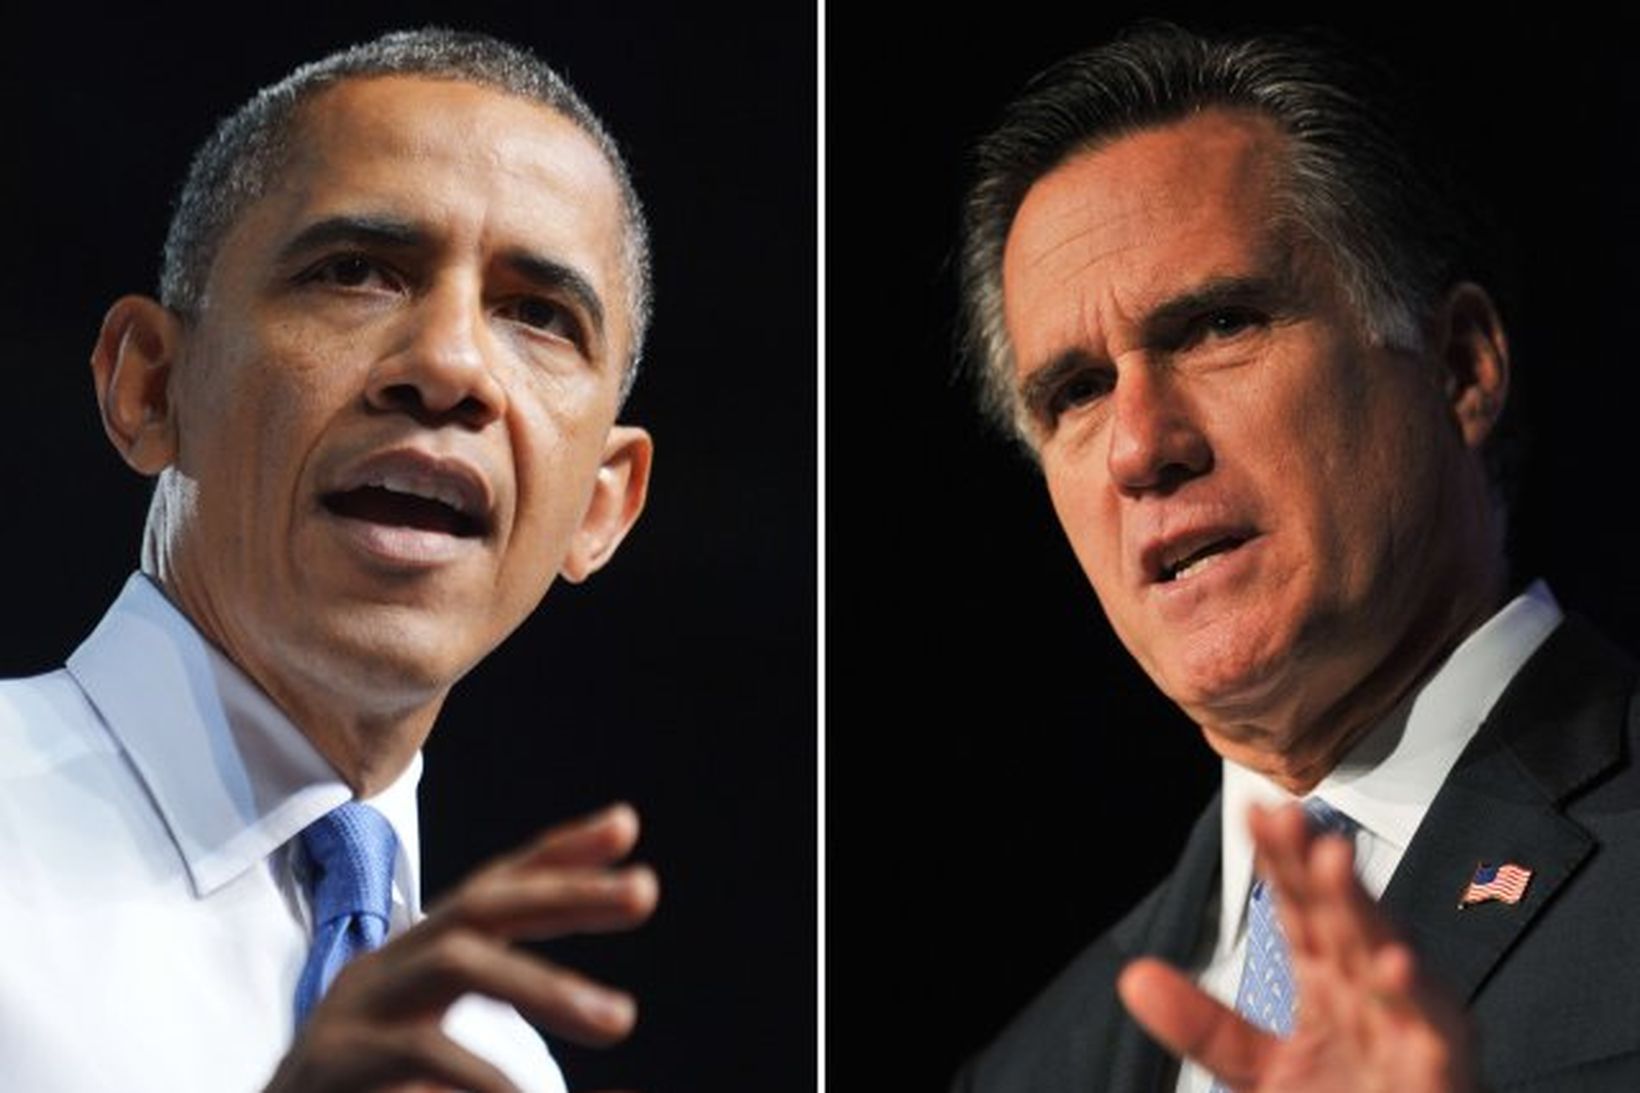 Barack Obama, forseti Bandaríkjanna, og Mitt Romney, forsetaefni Repúblikanaflokksins, takast …